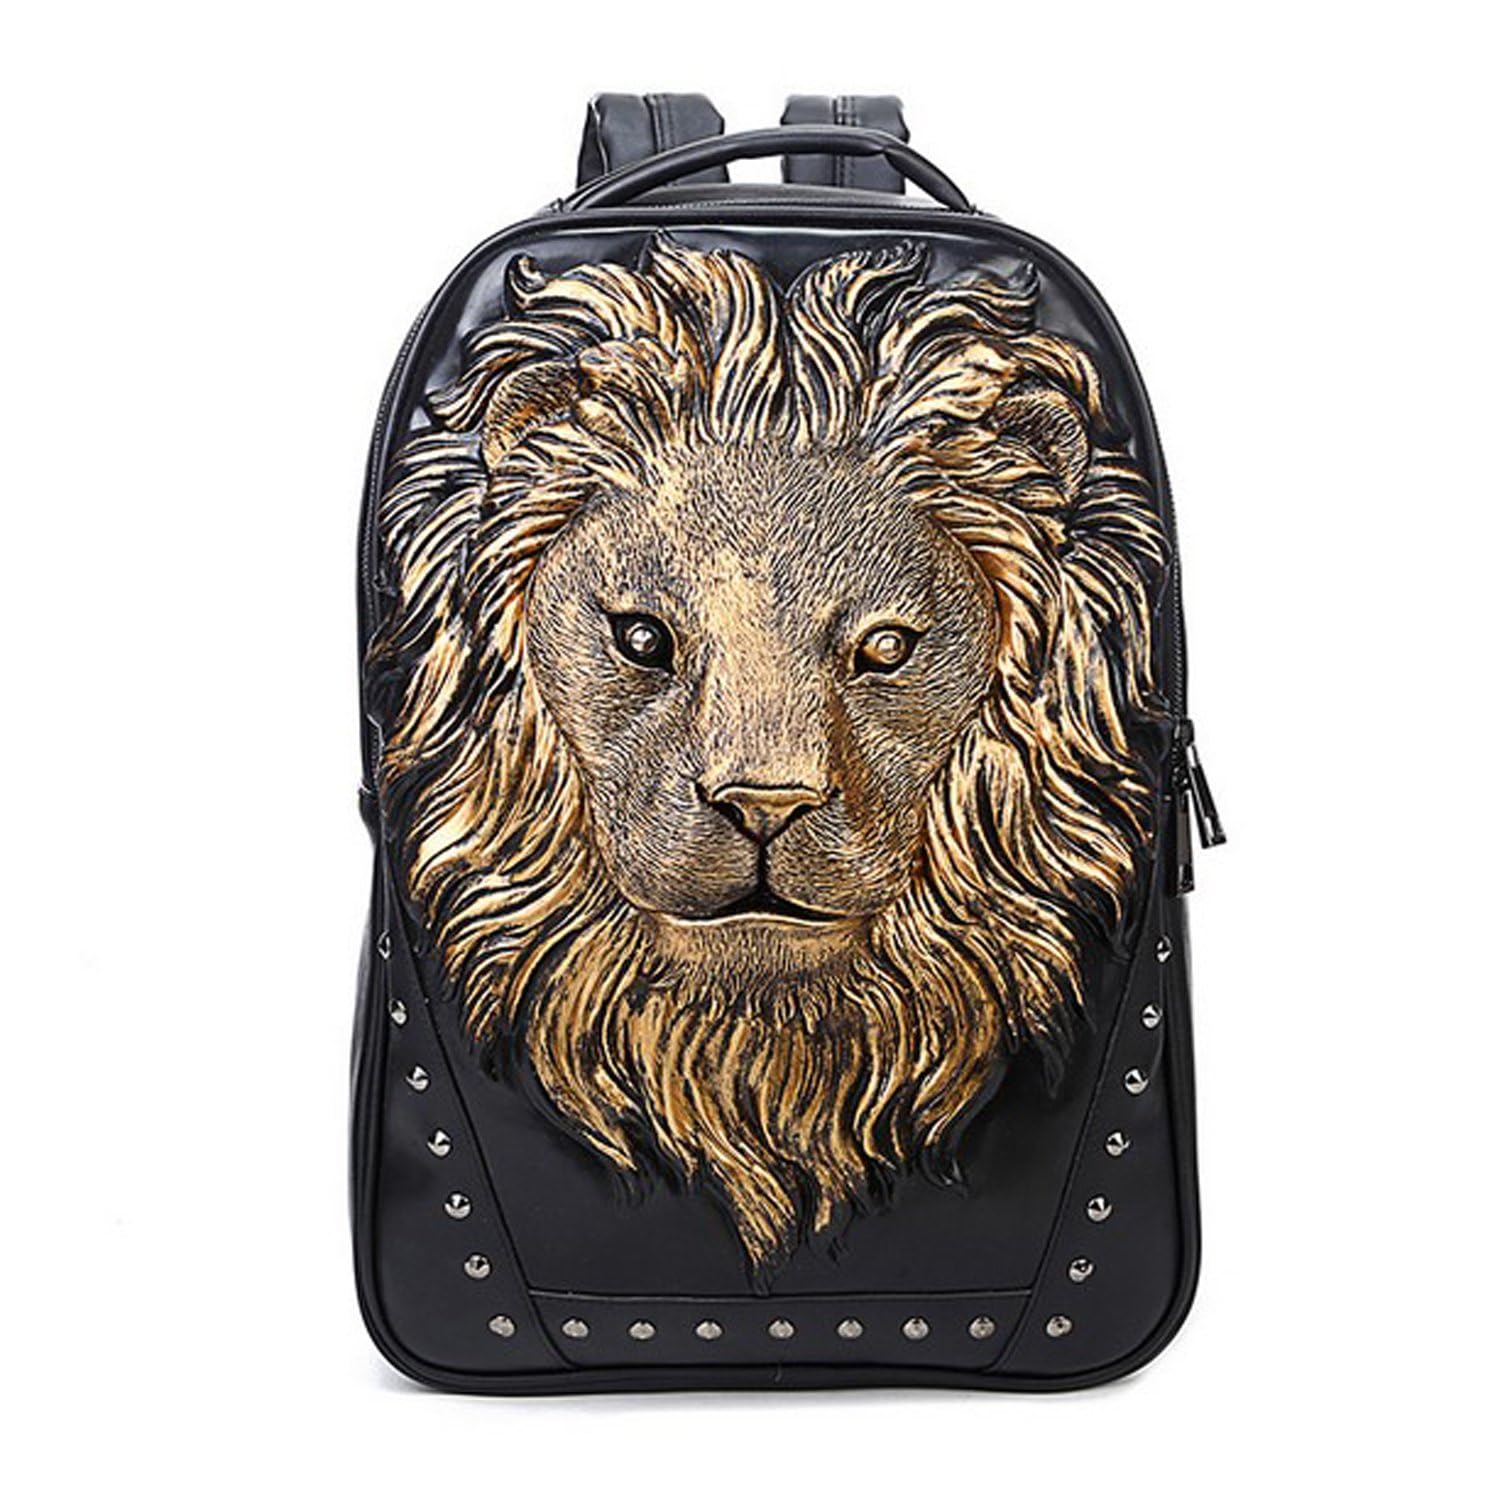 送料無料seamand Personalized 3D Lion PU Leather Casual Laptop Backpack for Men Durable Travel Daypack Gold color並行